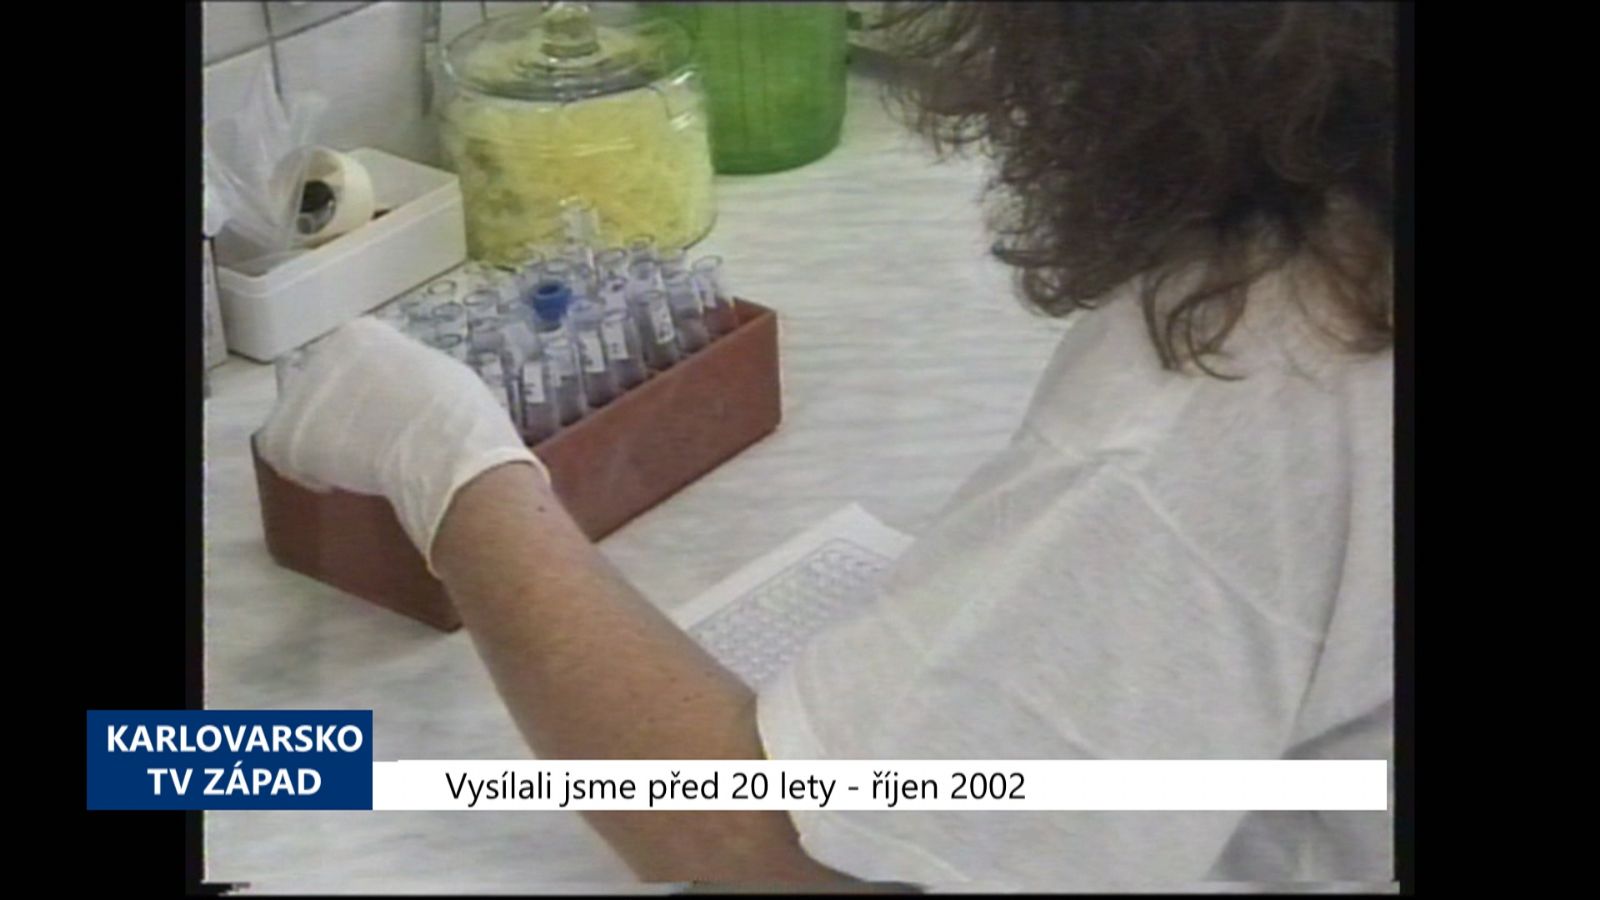 2002 – Chebsko: Z dvaceti testovaných prostitutek byly 3 HIV pozitivní (TV Západ)